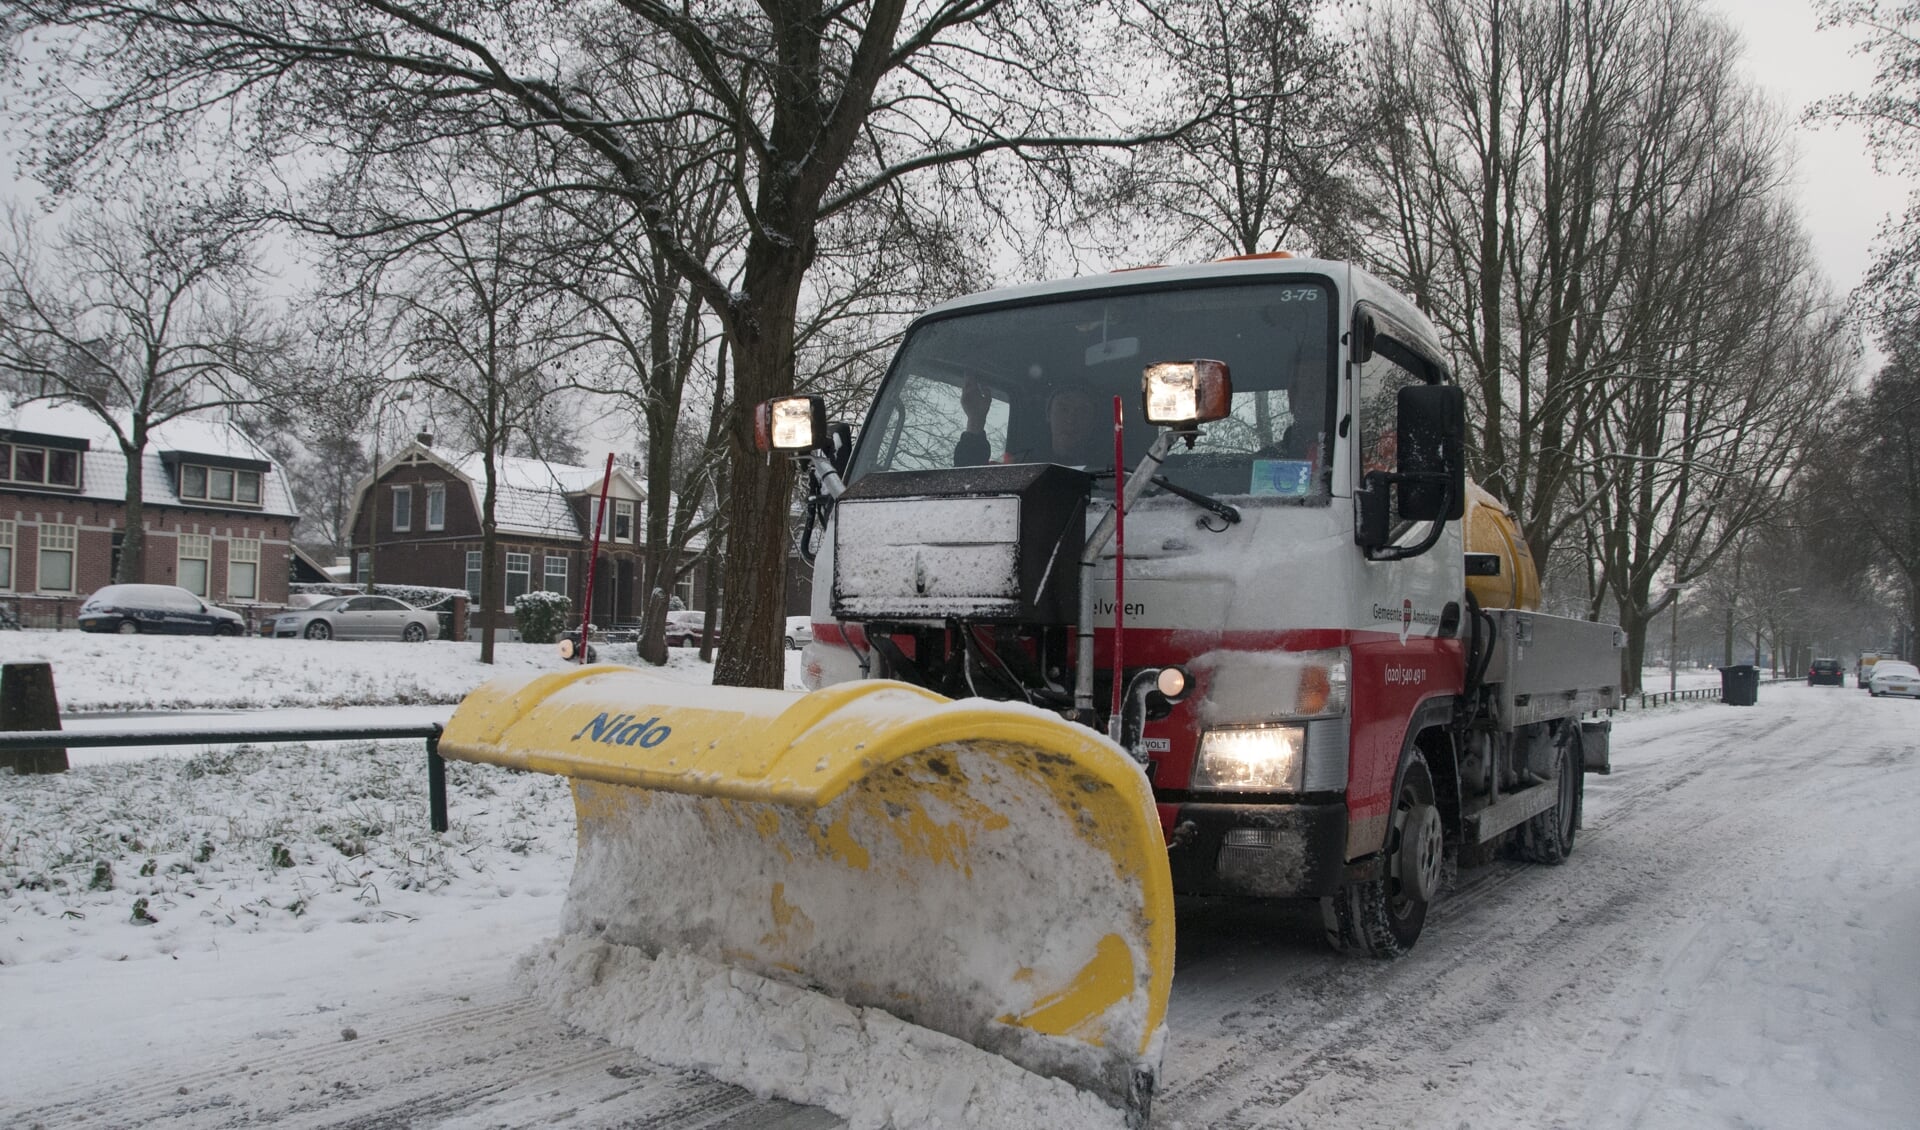 Strooiwagen in actie tijdens een vorige winterperiode.